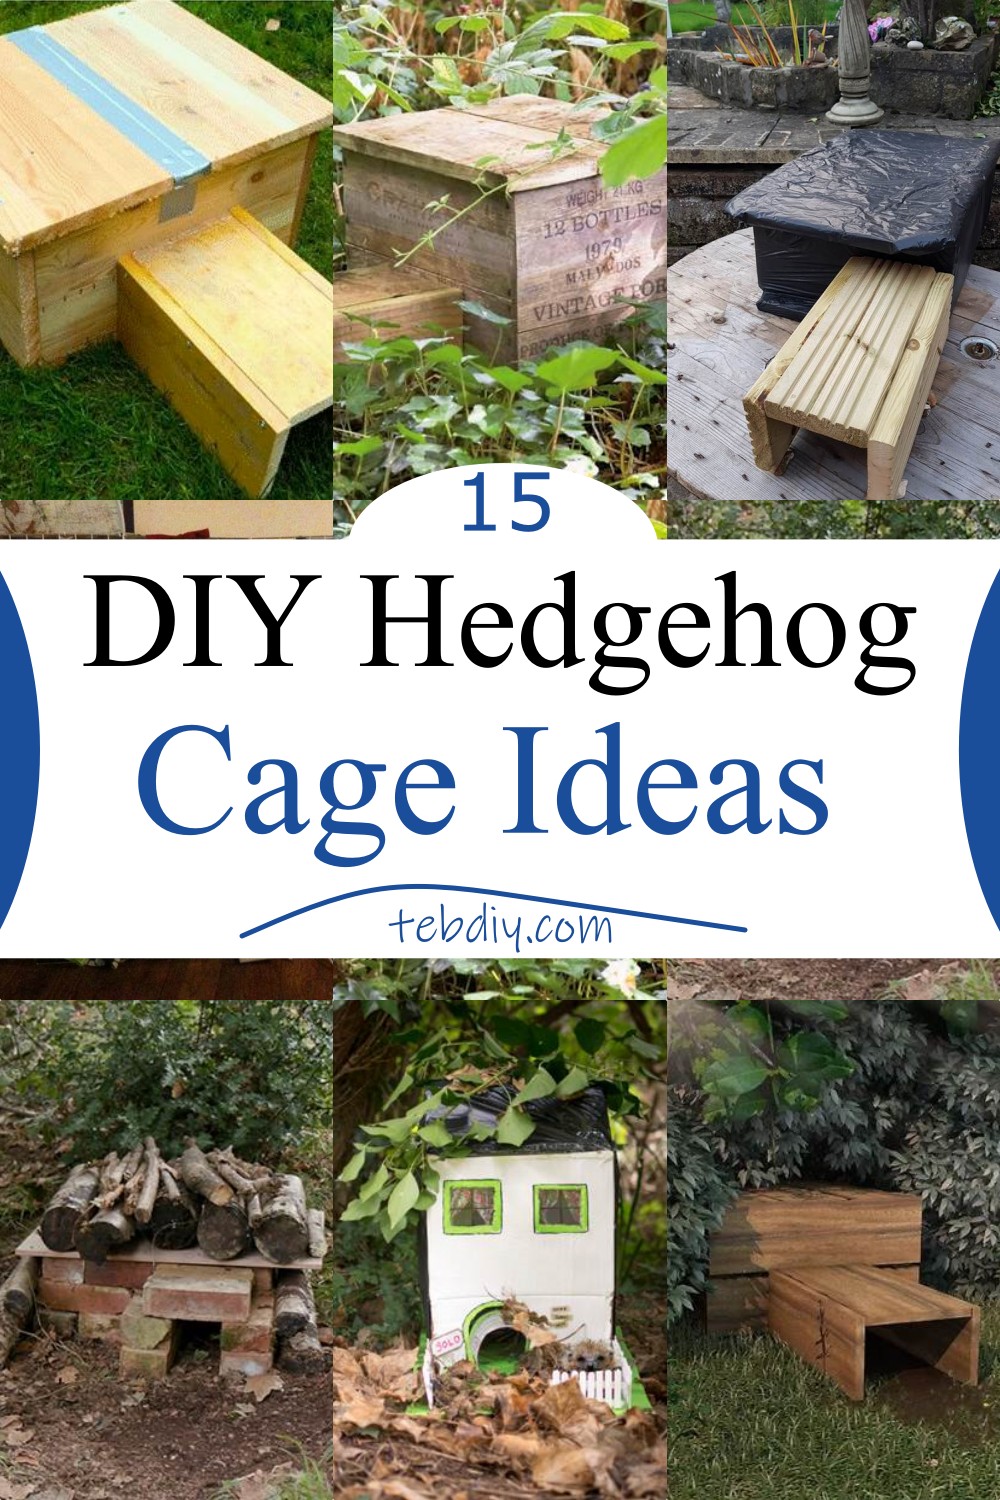 15 DIY Hedgehog Cage Ideas